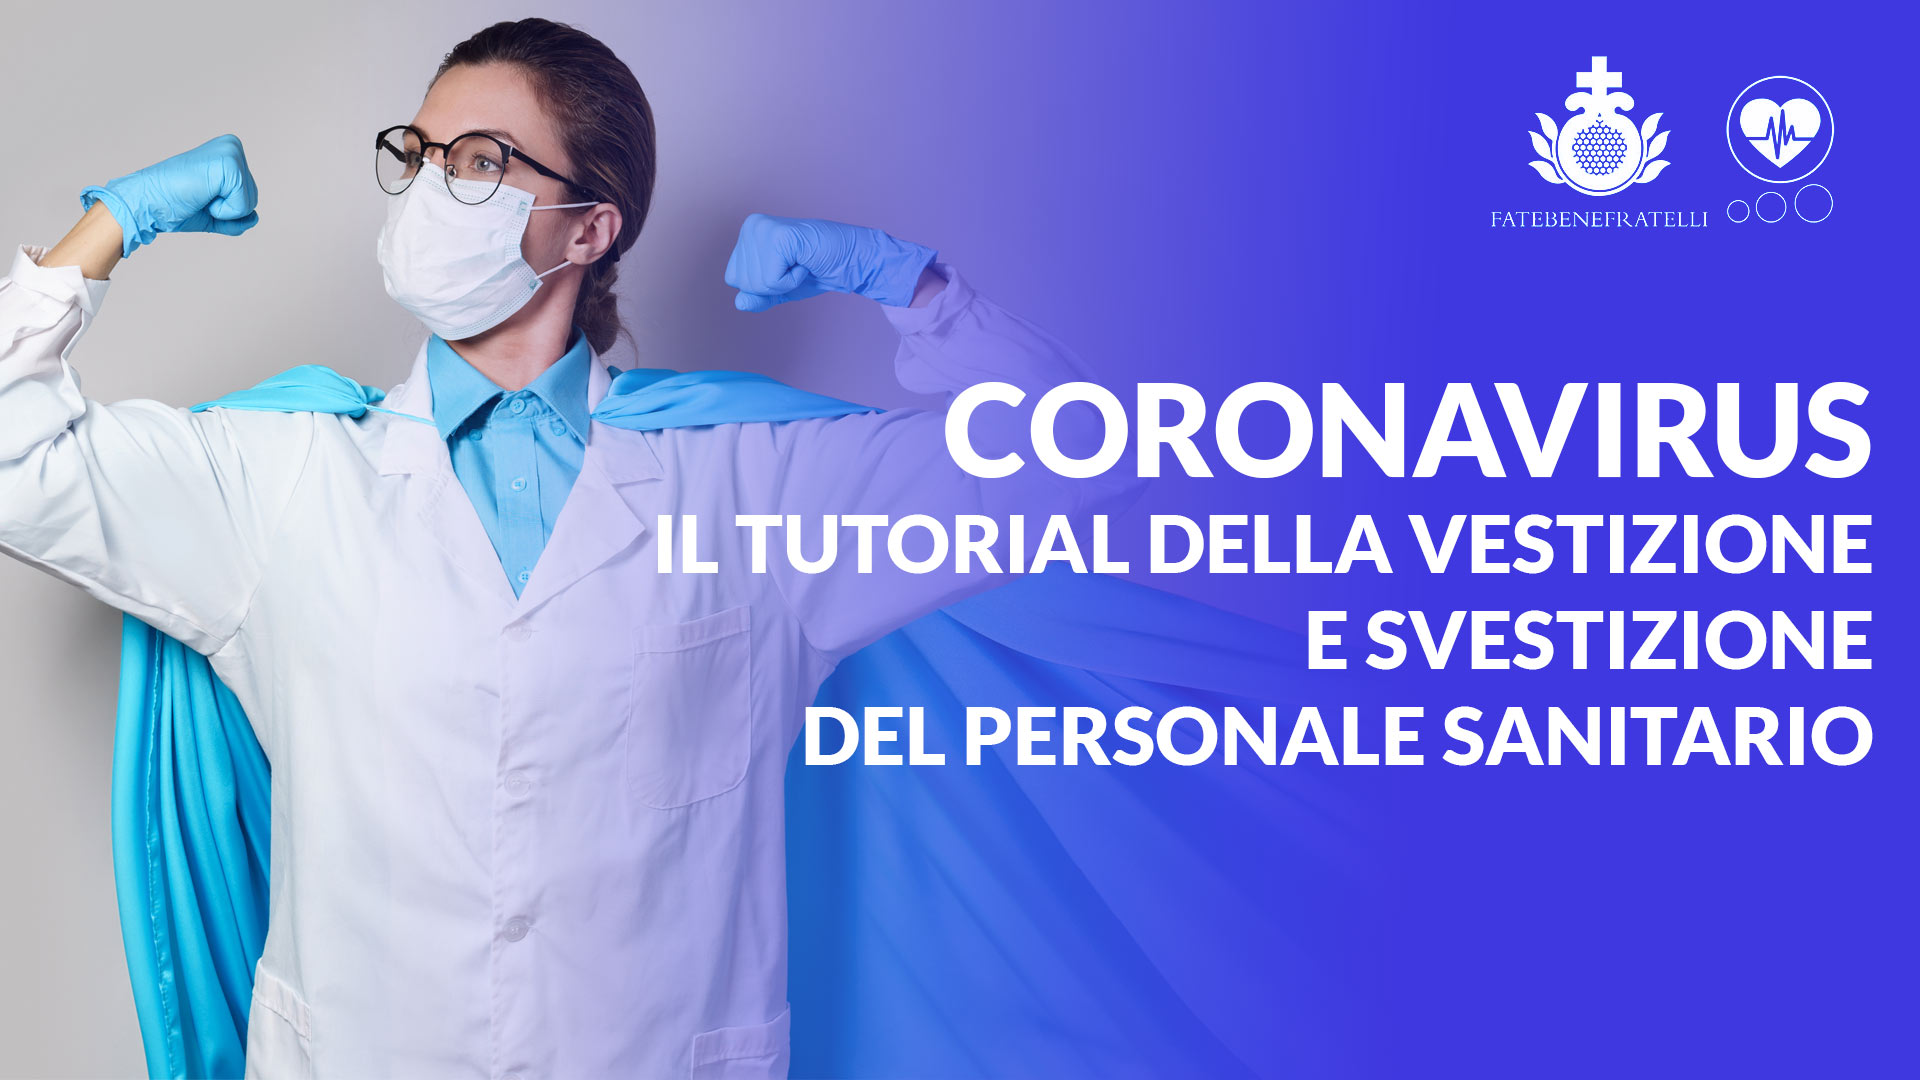 Coronavirus, Il tutorial della vestizione e svestizione del personale sanitario